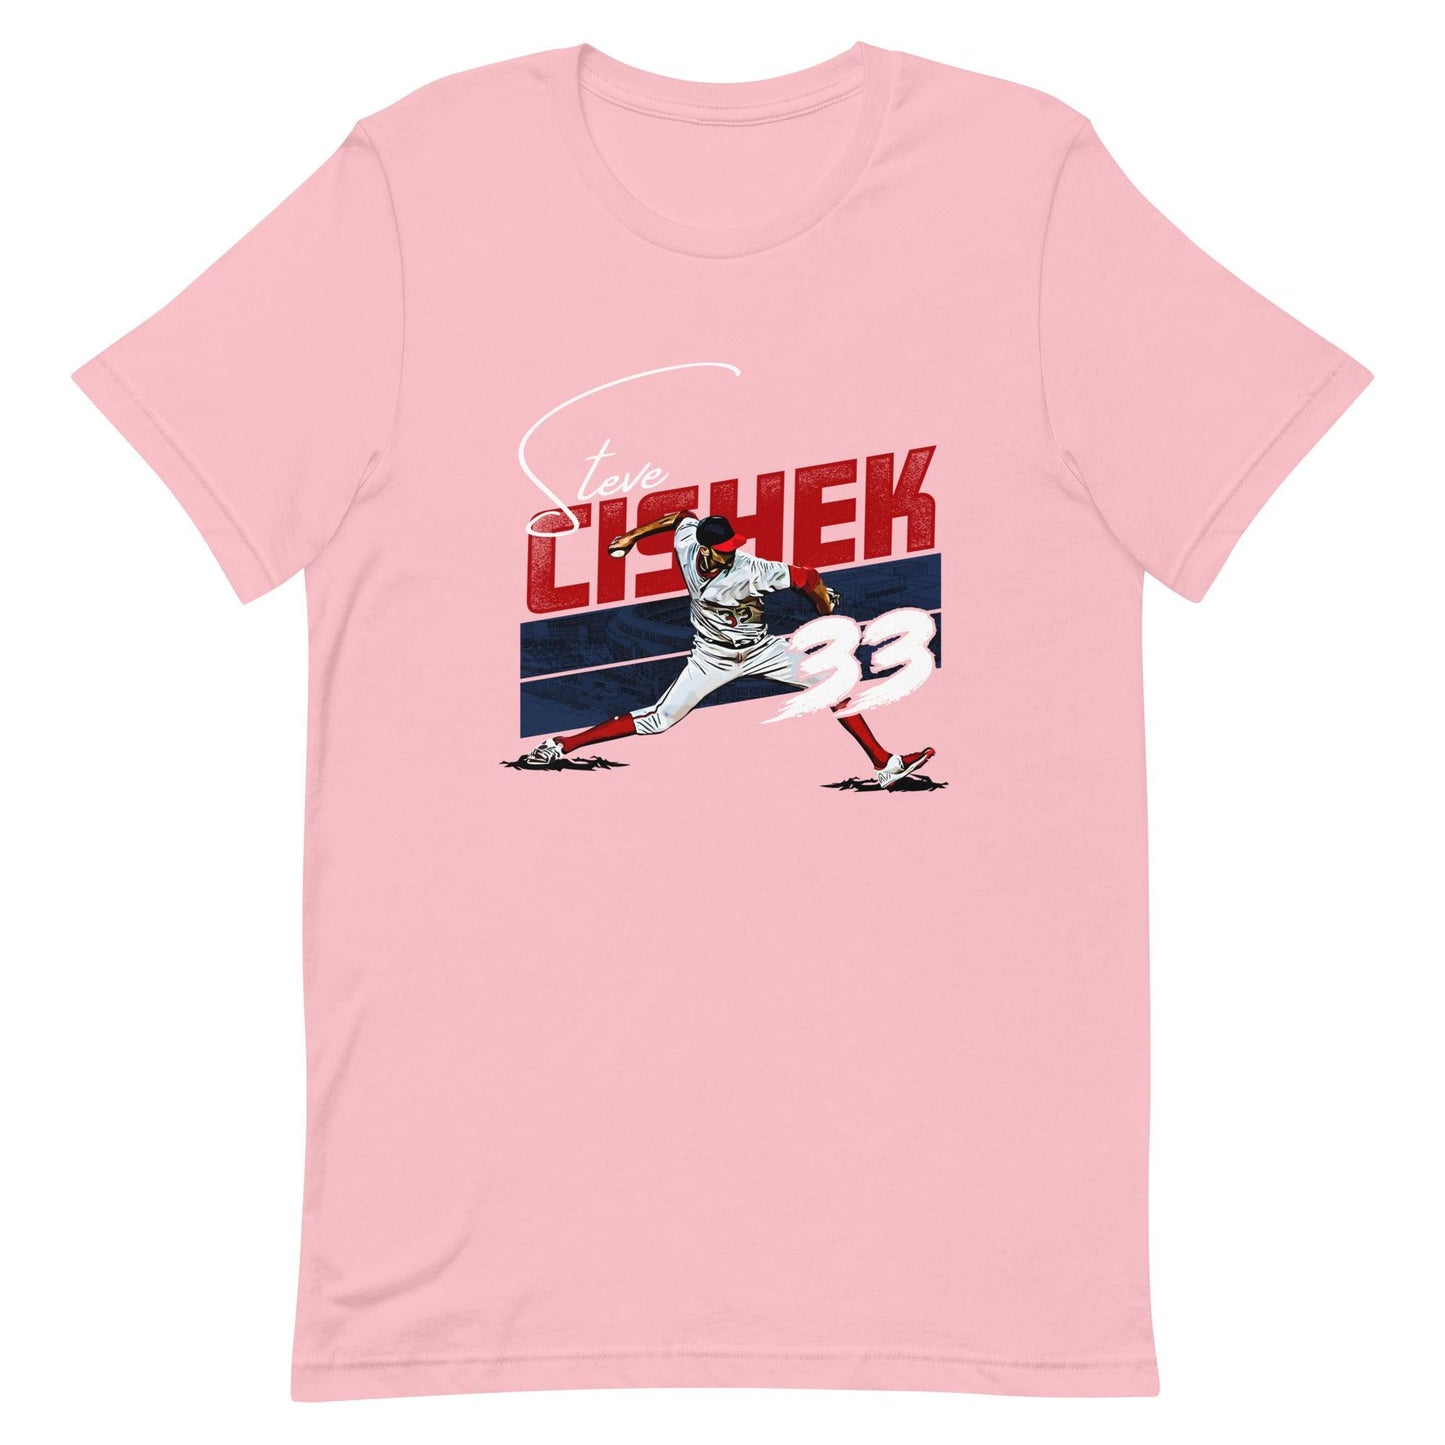 Steve Cishek "33" t-shirt - Fan Arch